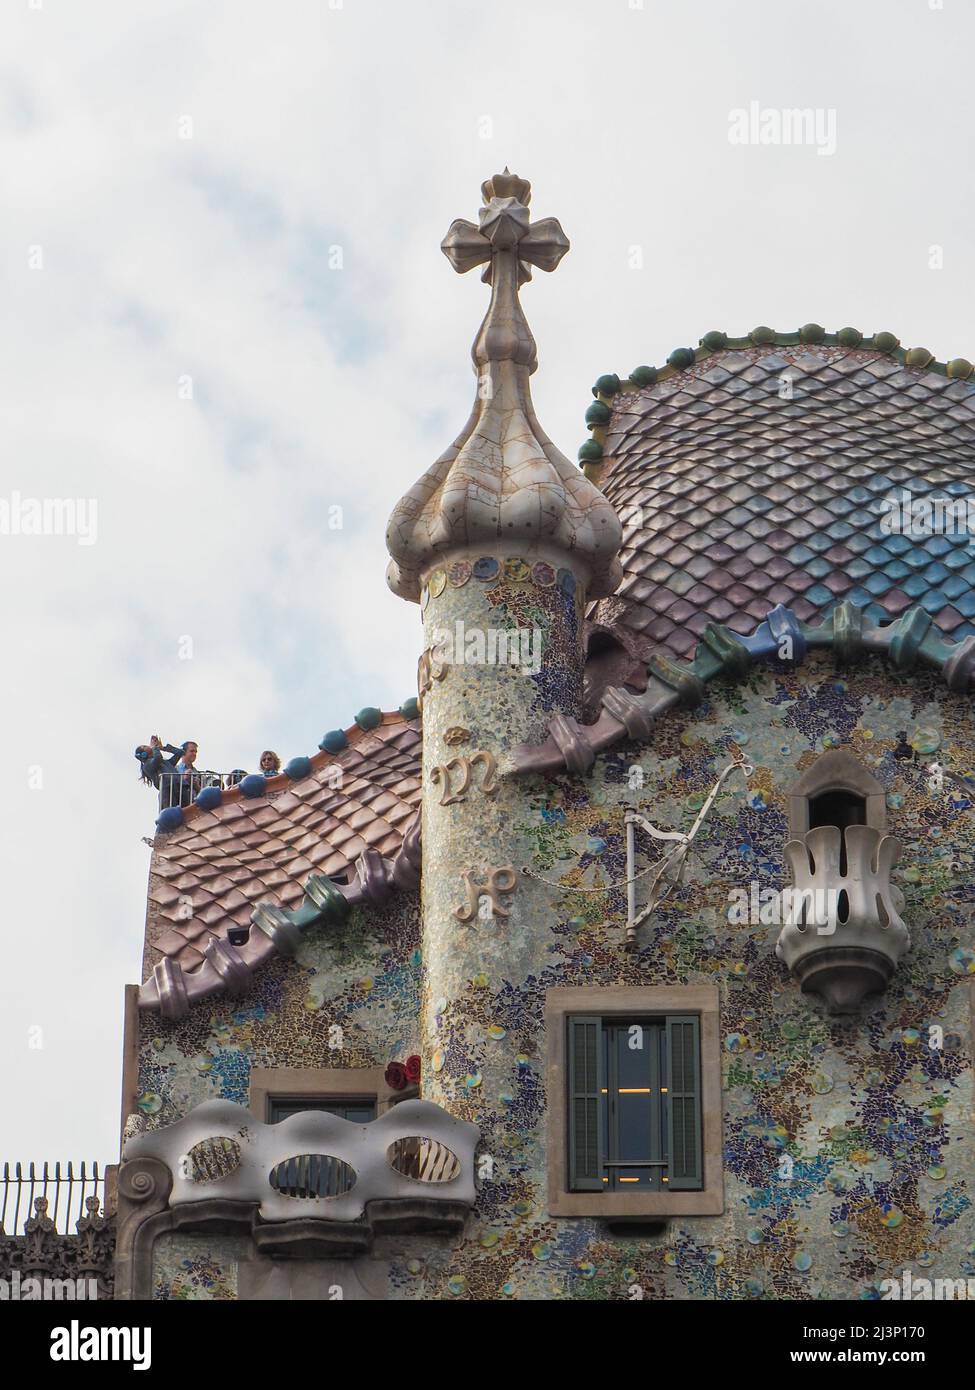 Façade de la Casa Batlò conçu par l'architecte Antoni Gaudí, de l'Eixample, Barcelone, Espagne, Europe Banque D'Images